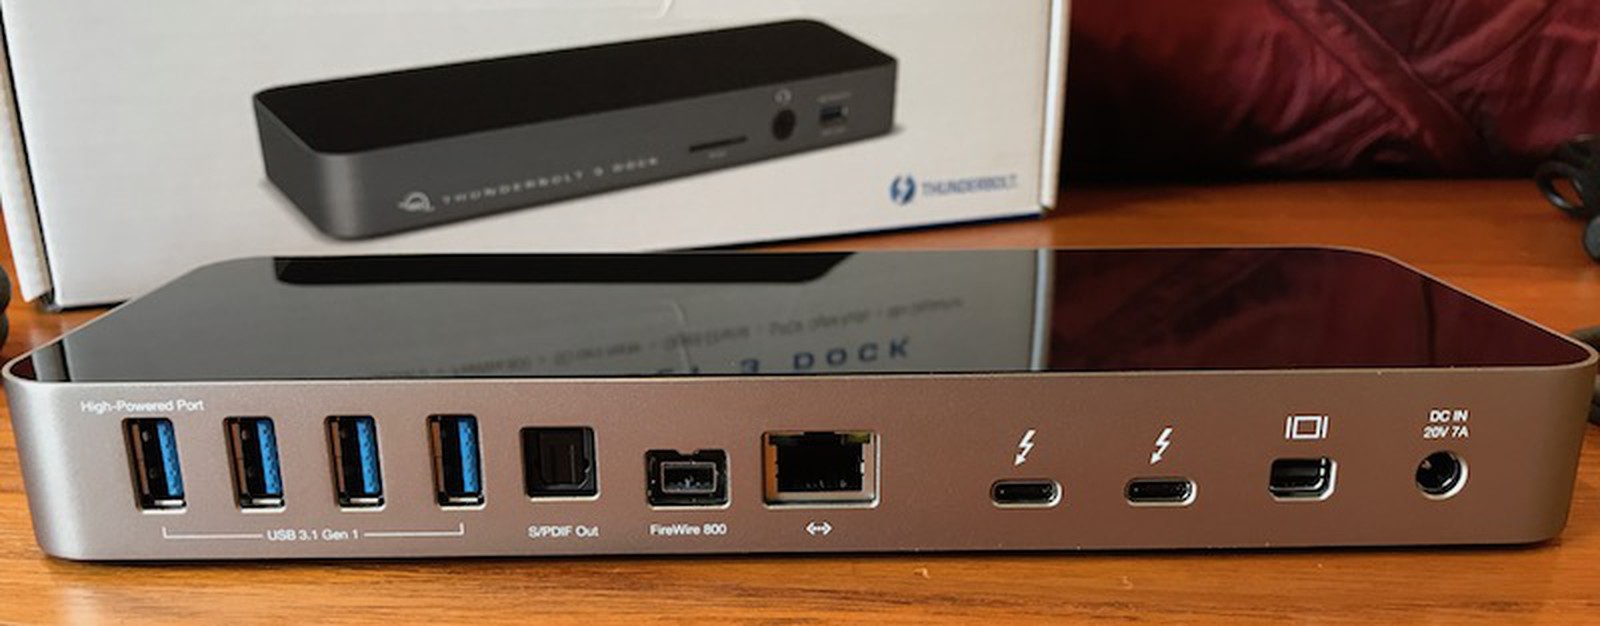 2010 macbook pro 13 dc powerjack port